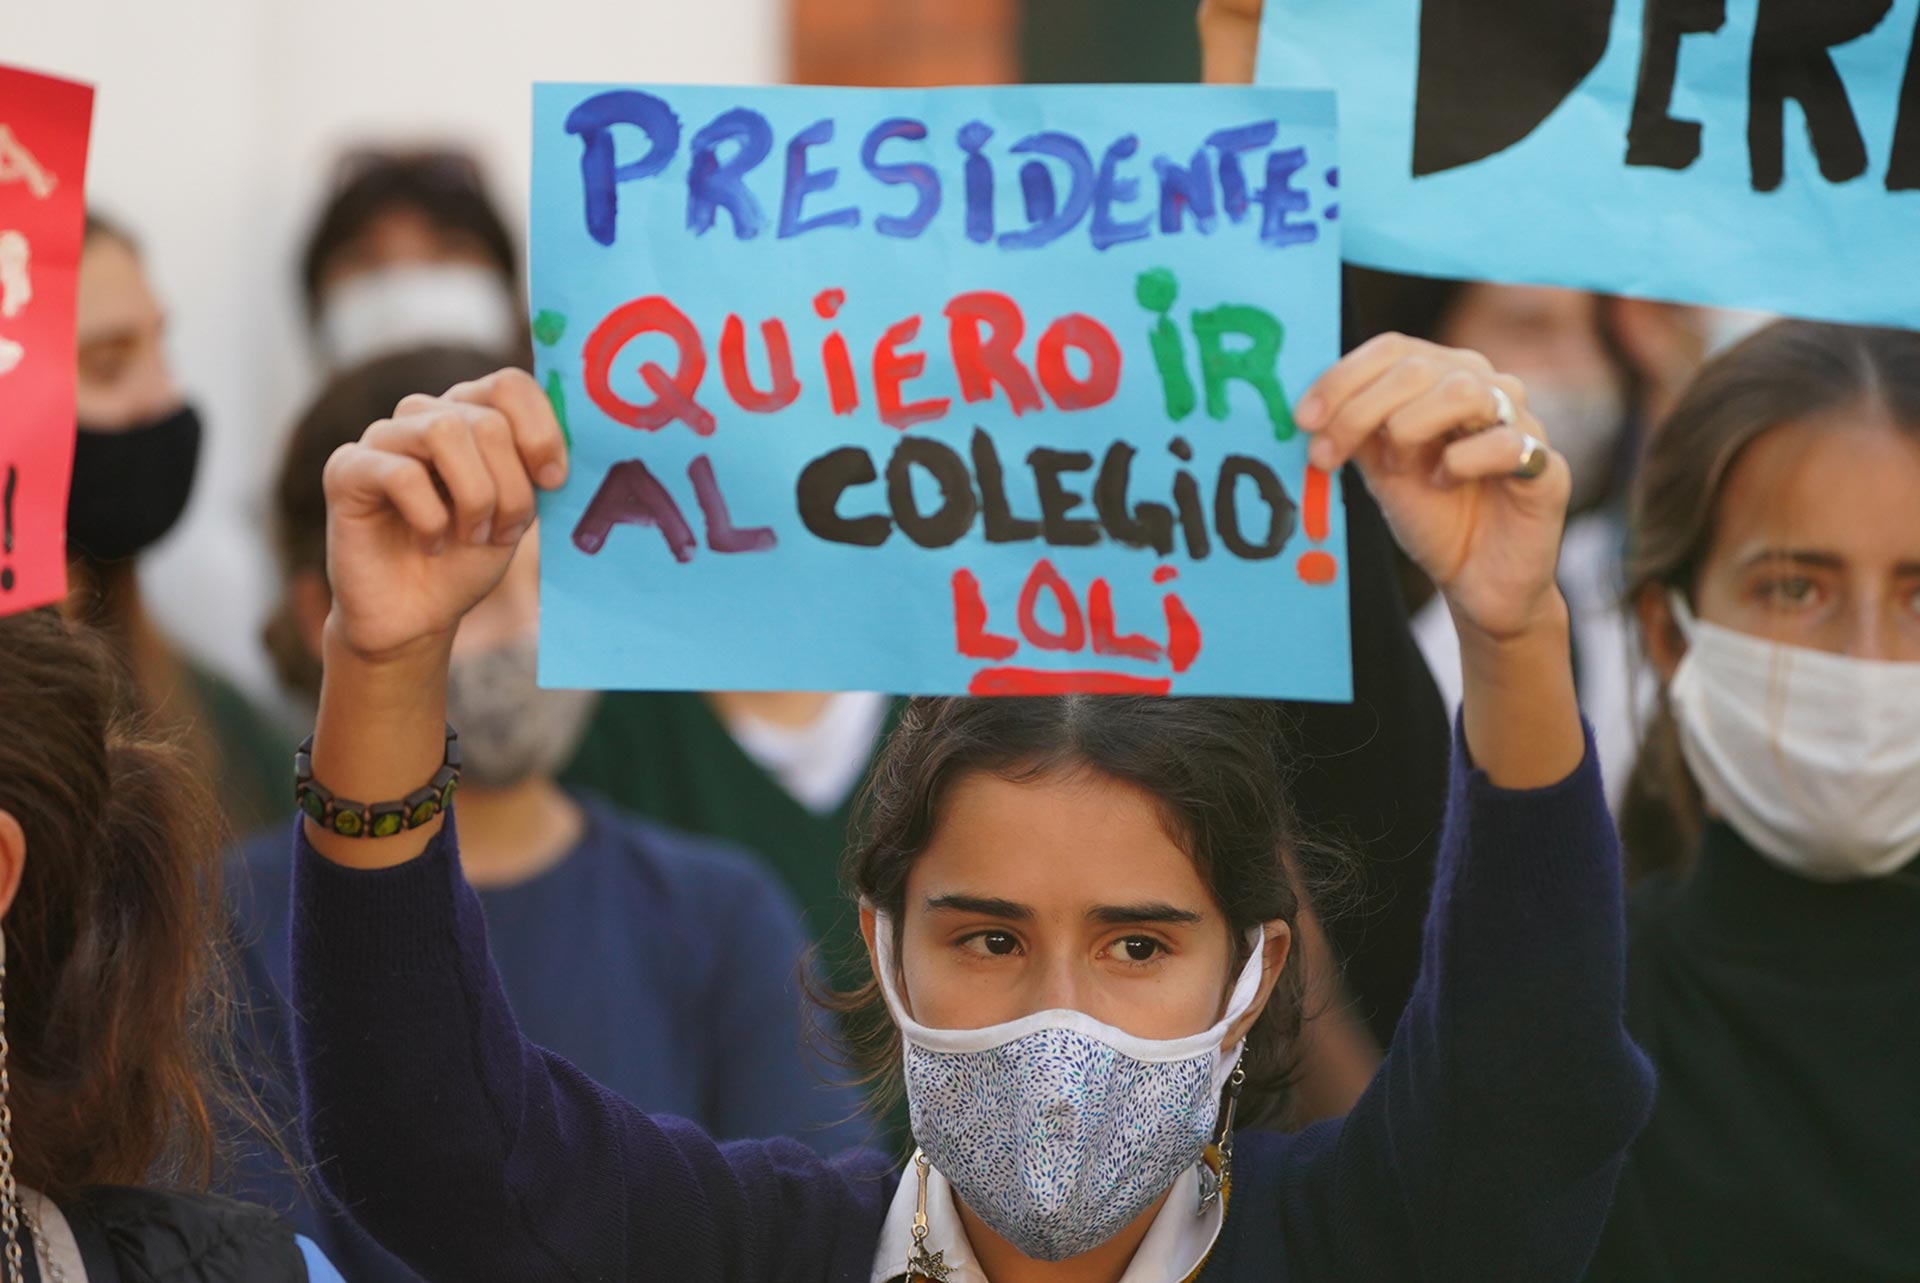 "Presidente quiero ir al colegio", dice el cartel pintado por una alumna de nombre Loli